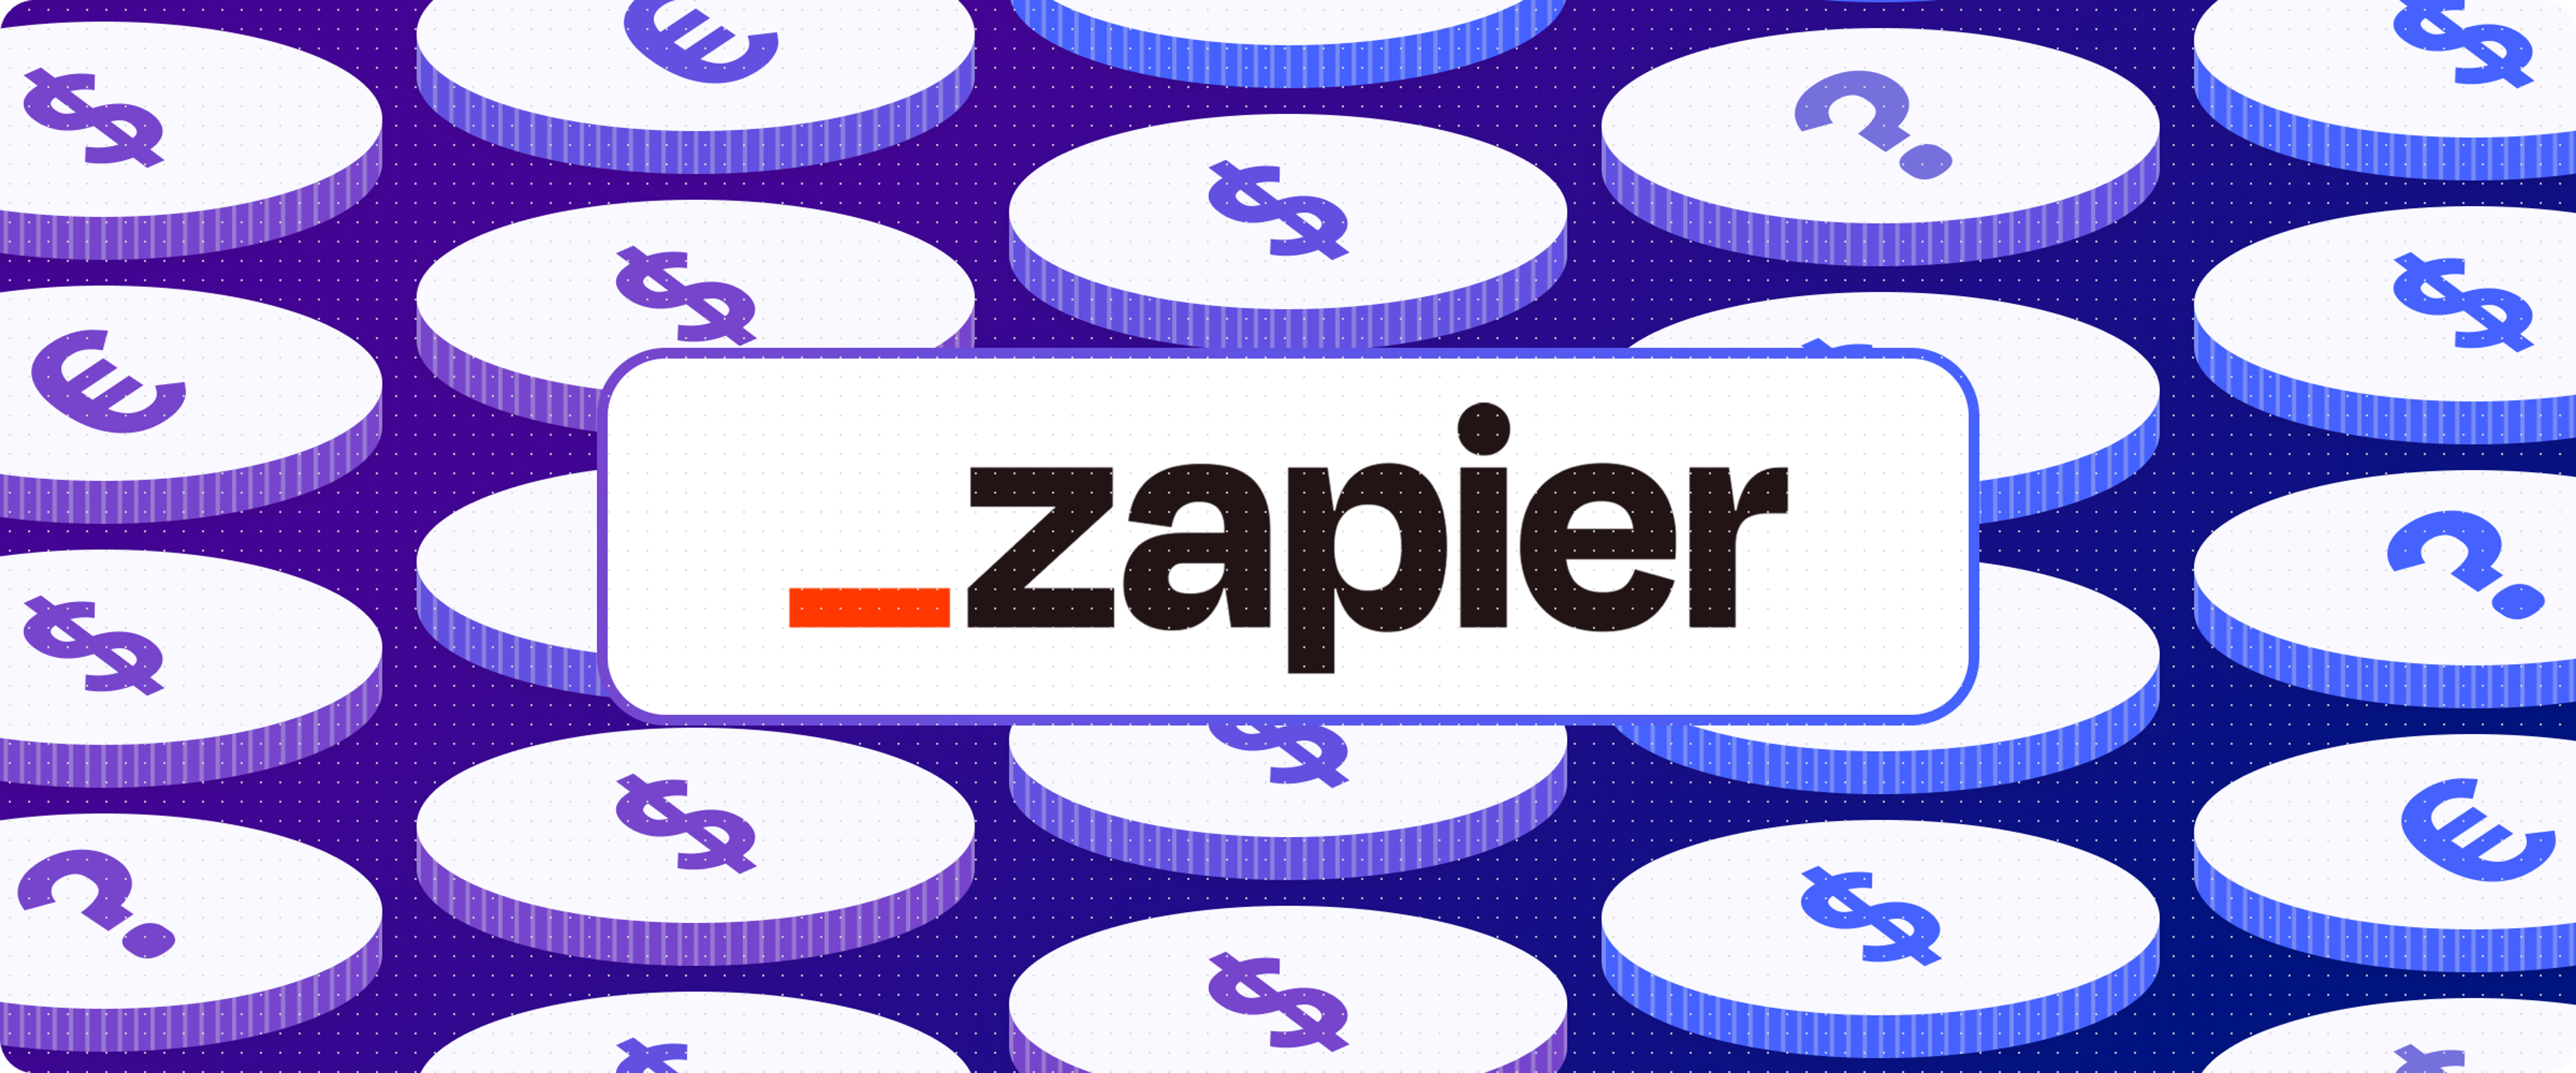 Decorative banner with Zapier logo